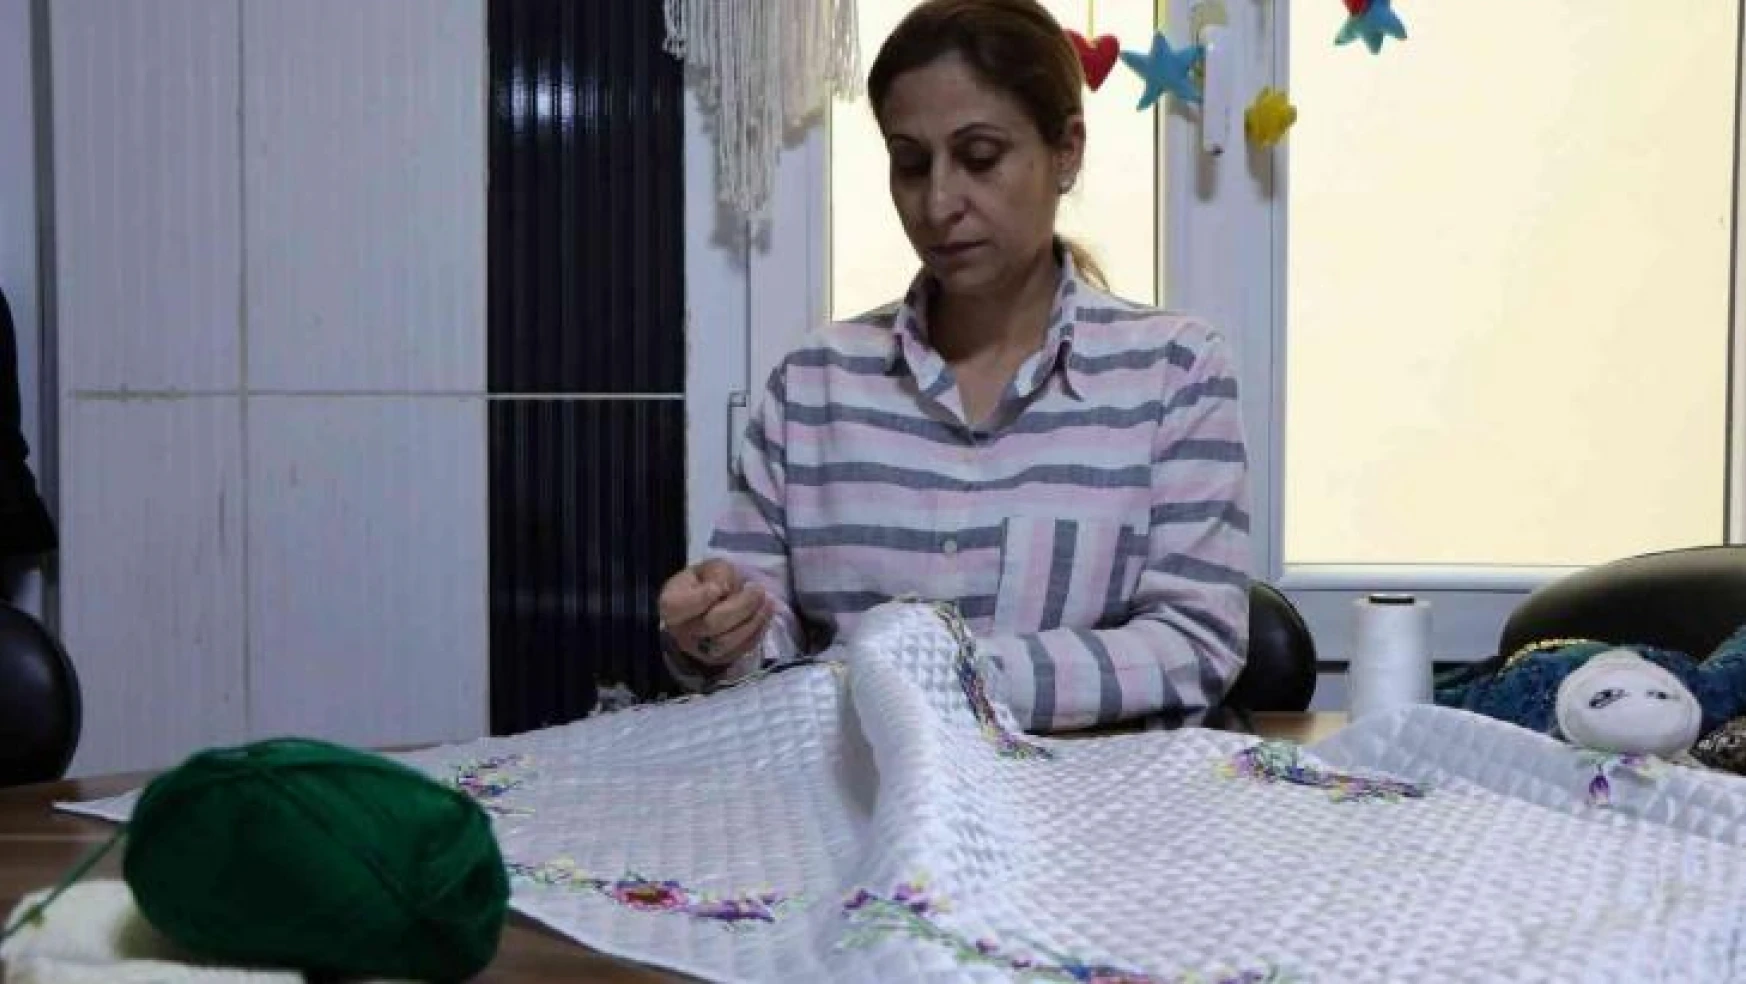 Şanlıurfa'da marifetli kadınlar aile bütçelerine katkı sağlıyor